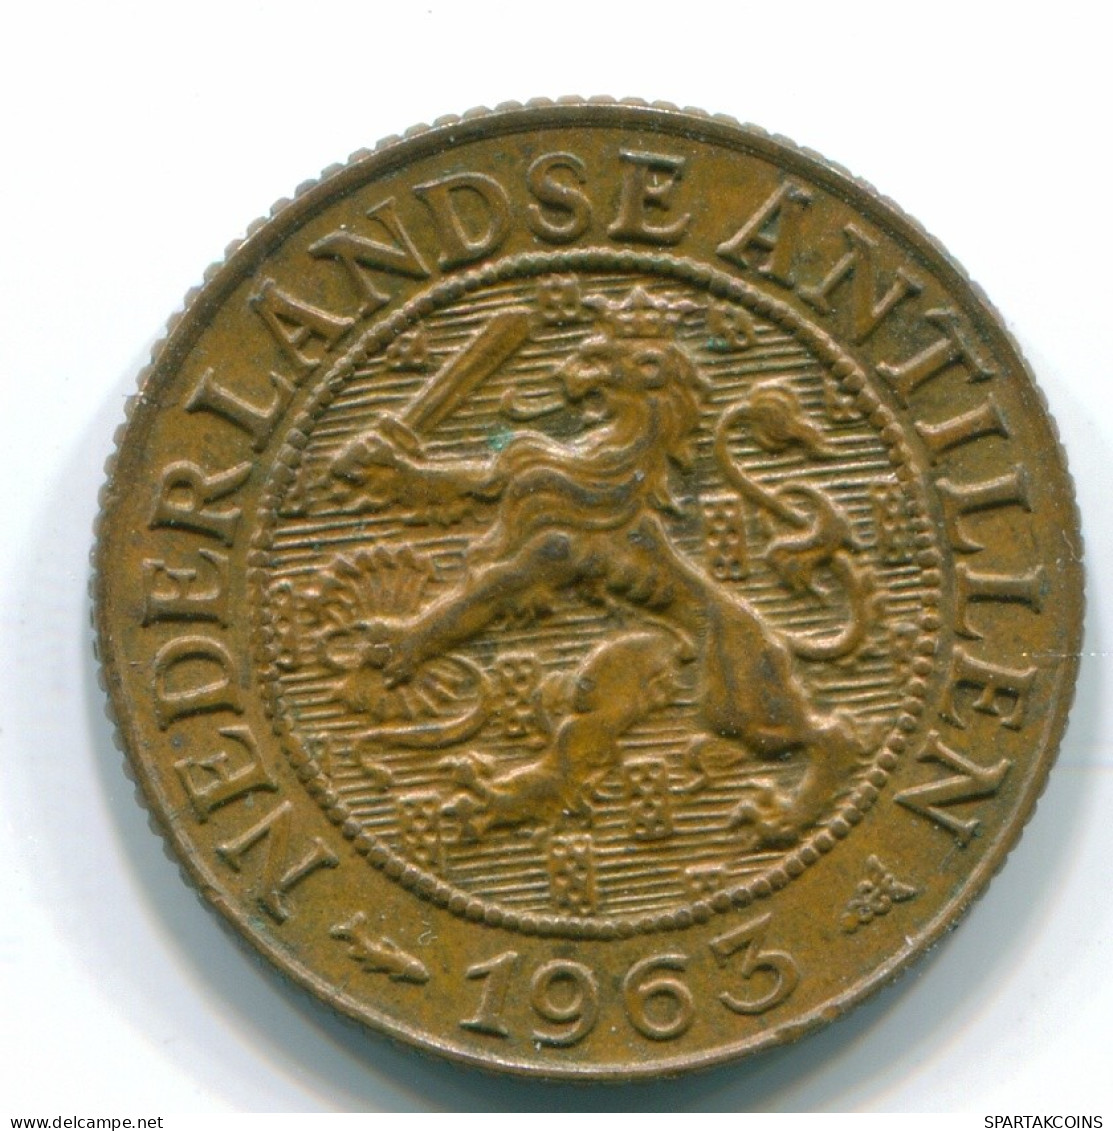 1 CENT 1965 NETHERLANDS ANTILLES Bronze Fish Colonial Coin #S11104.U.A - Antilles Néerlandaises